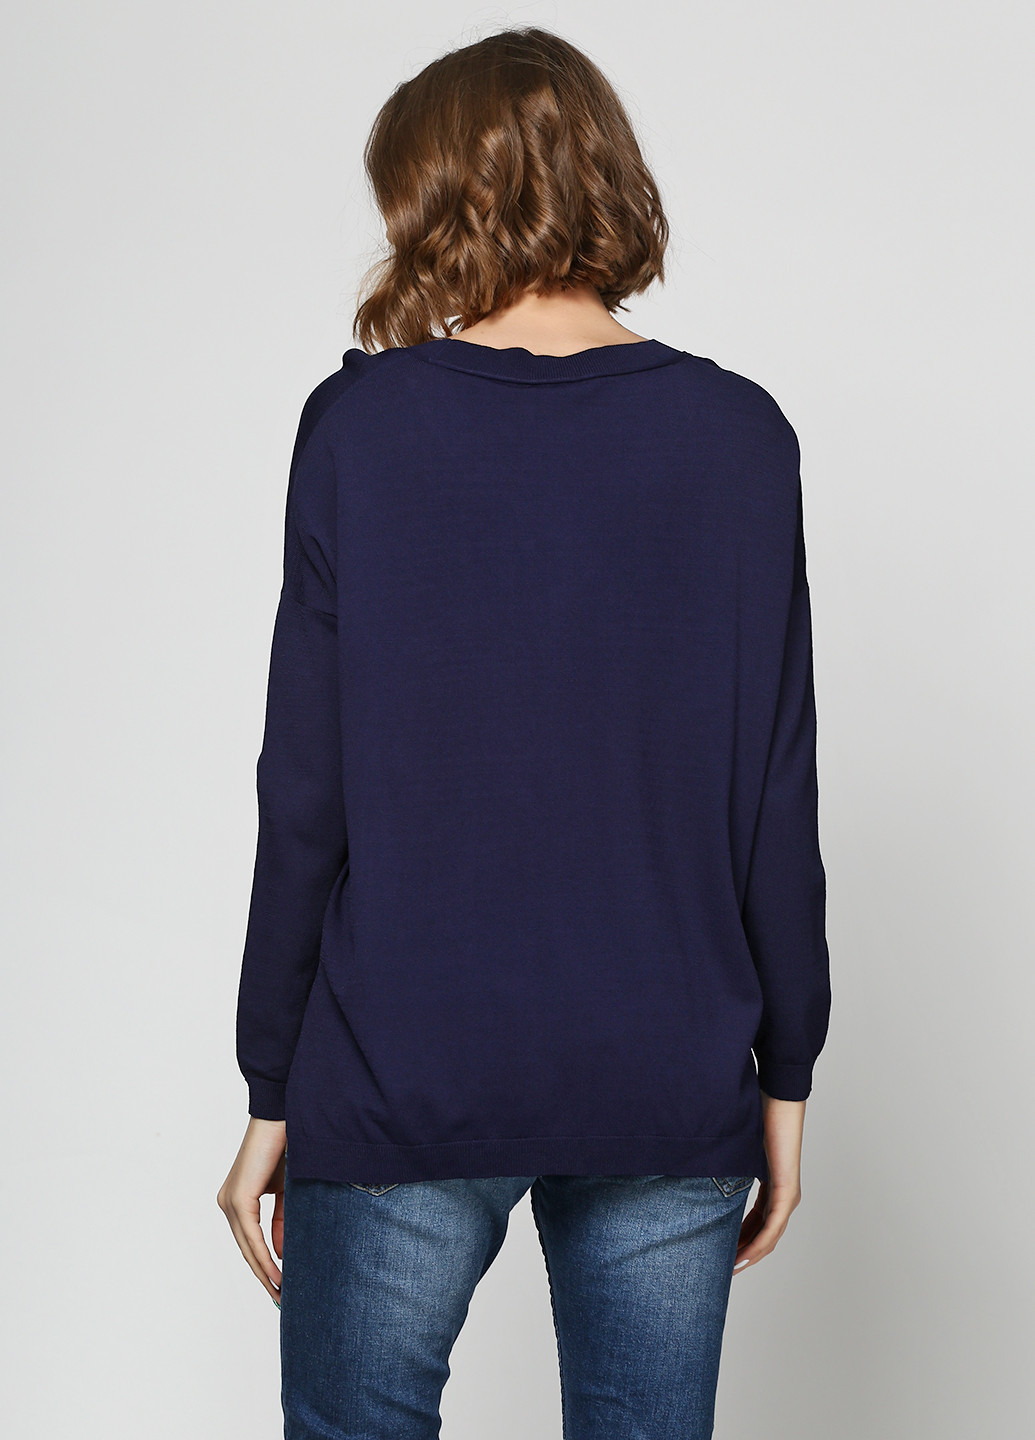 Синий демисезонный пуловер пуловер Asos